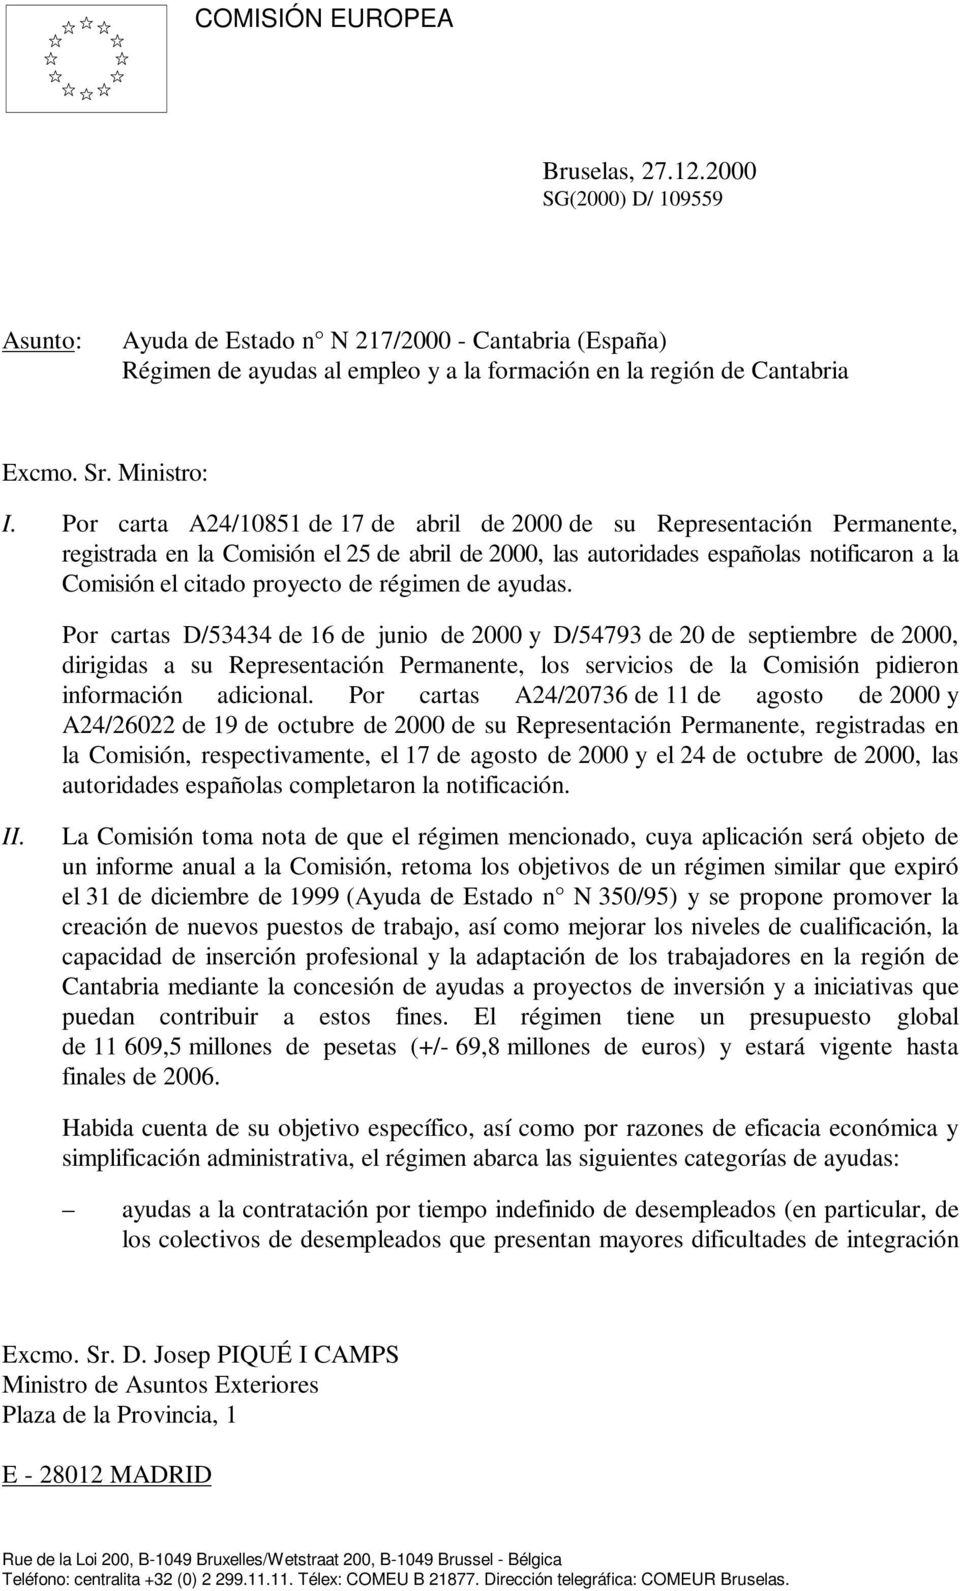 Por carta A24/10851 de 17 de abril de 2000 de su Representación Permanente, registrada en la Comisión el 25 de abril de 2000, las autoridades españolas notificaron a la Comisión el citado proyecto de